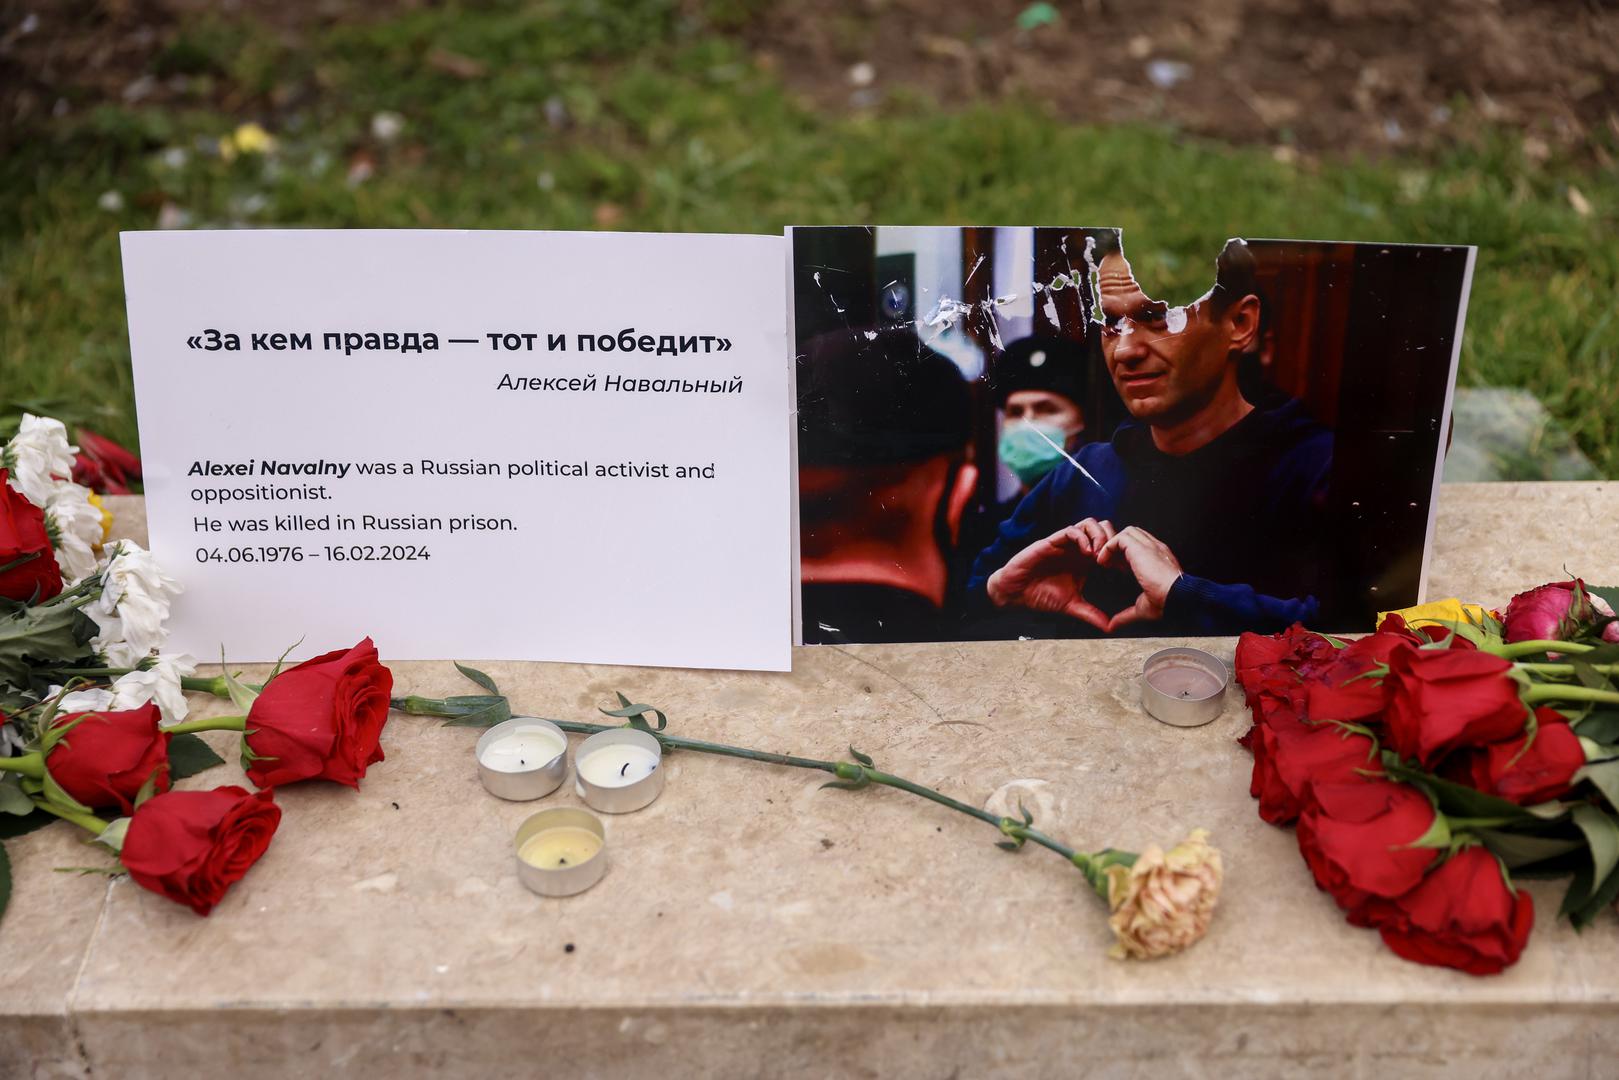 Zapaljene su svijeće, a uz fotografiju Navaljnog na ruskom je napisat citat: "Pobijedit će onaj koji slijedi istinu". 

